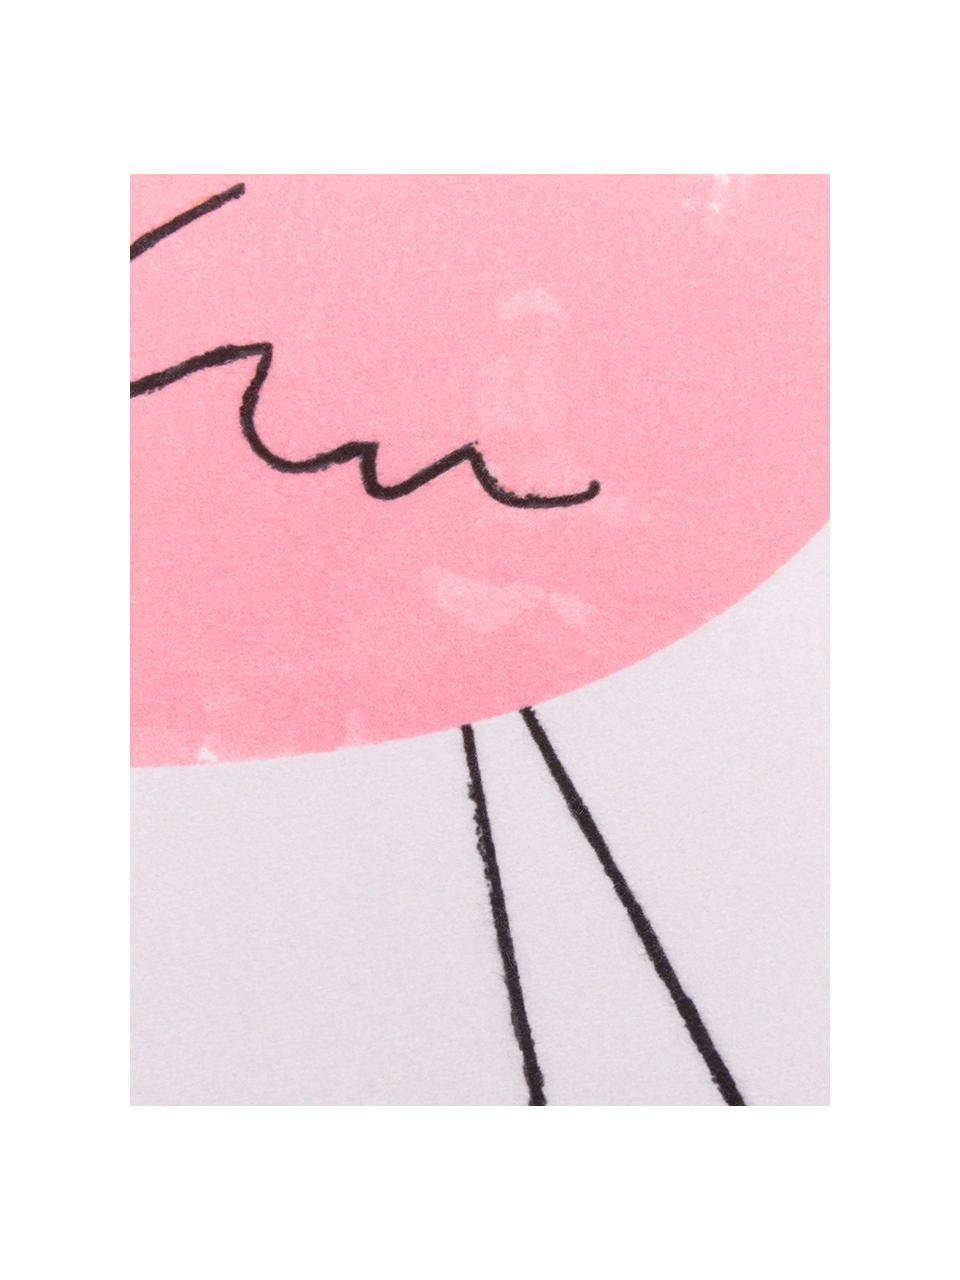 Leichtes Strandtuch Mina mit Flamingo-Motiv, 55% Polyester, 45% Baumwolle Sehr leichte Qualität, 340 g/m², Rosa, B 70 x L 150 cm